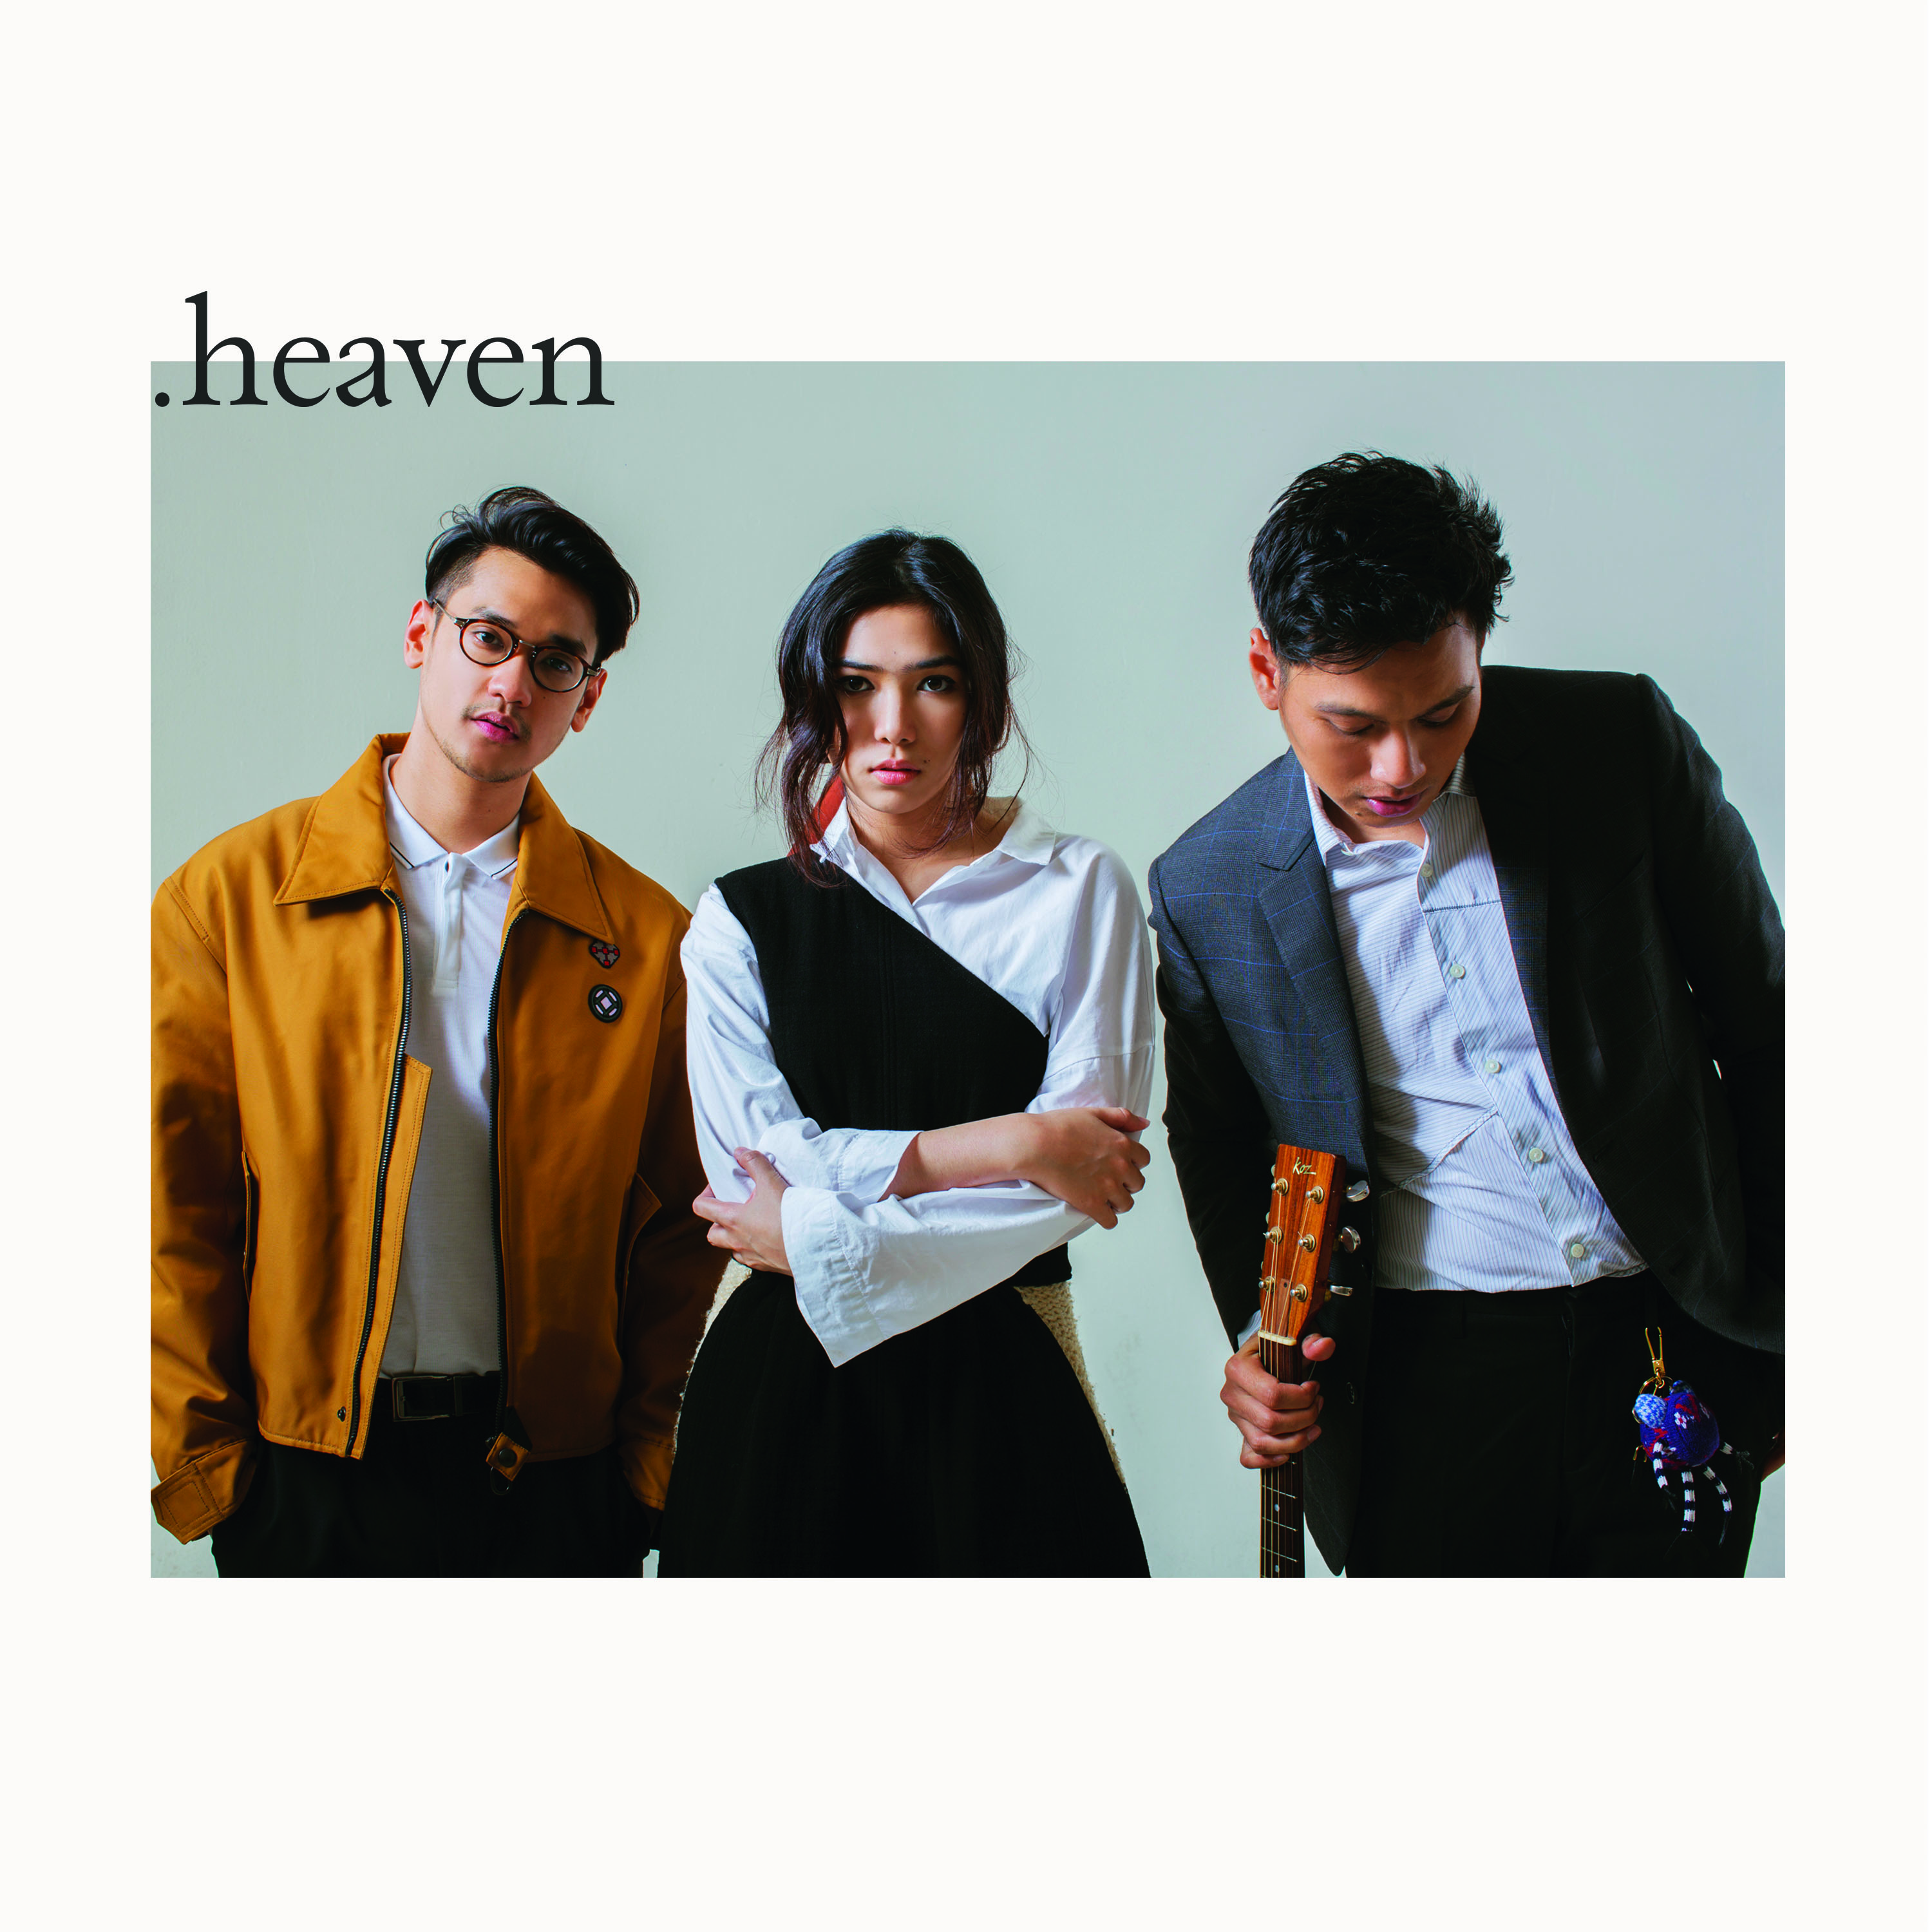 Untuk pertama kalinyamereka berkolaborasi dalam 1 project yang sama yaitu sebuah lagu berjudul”HEAVEN” yang dirilis pada